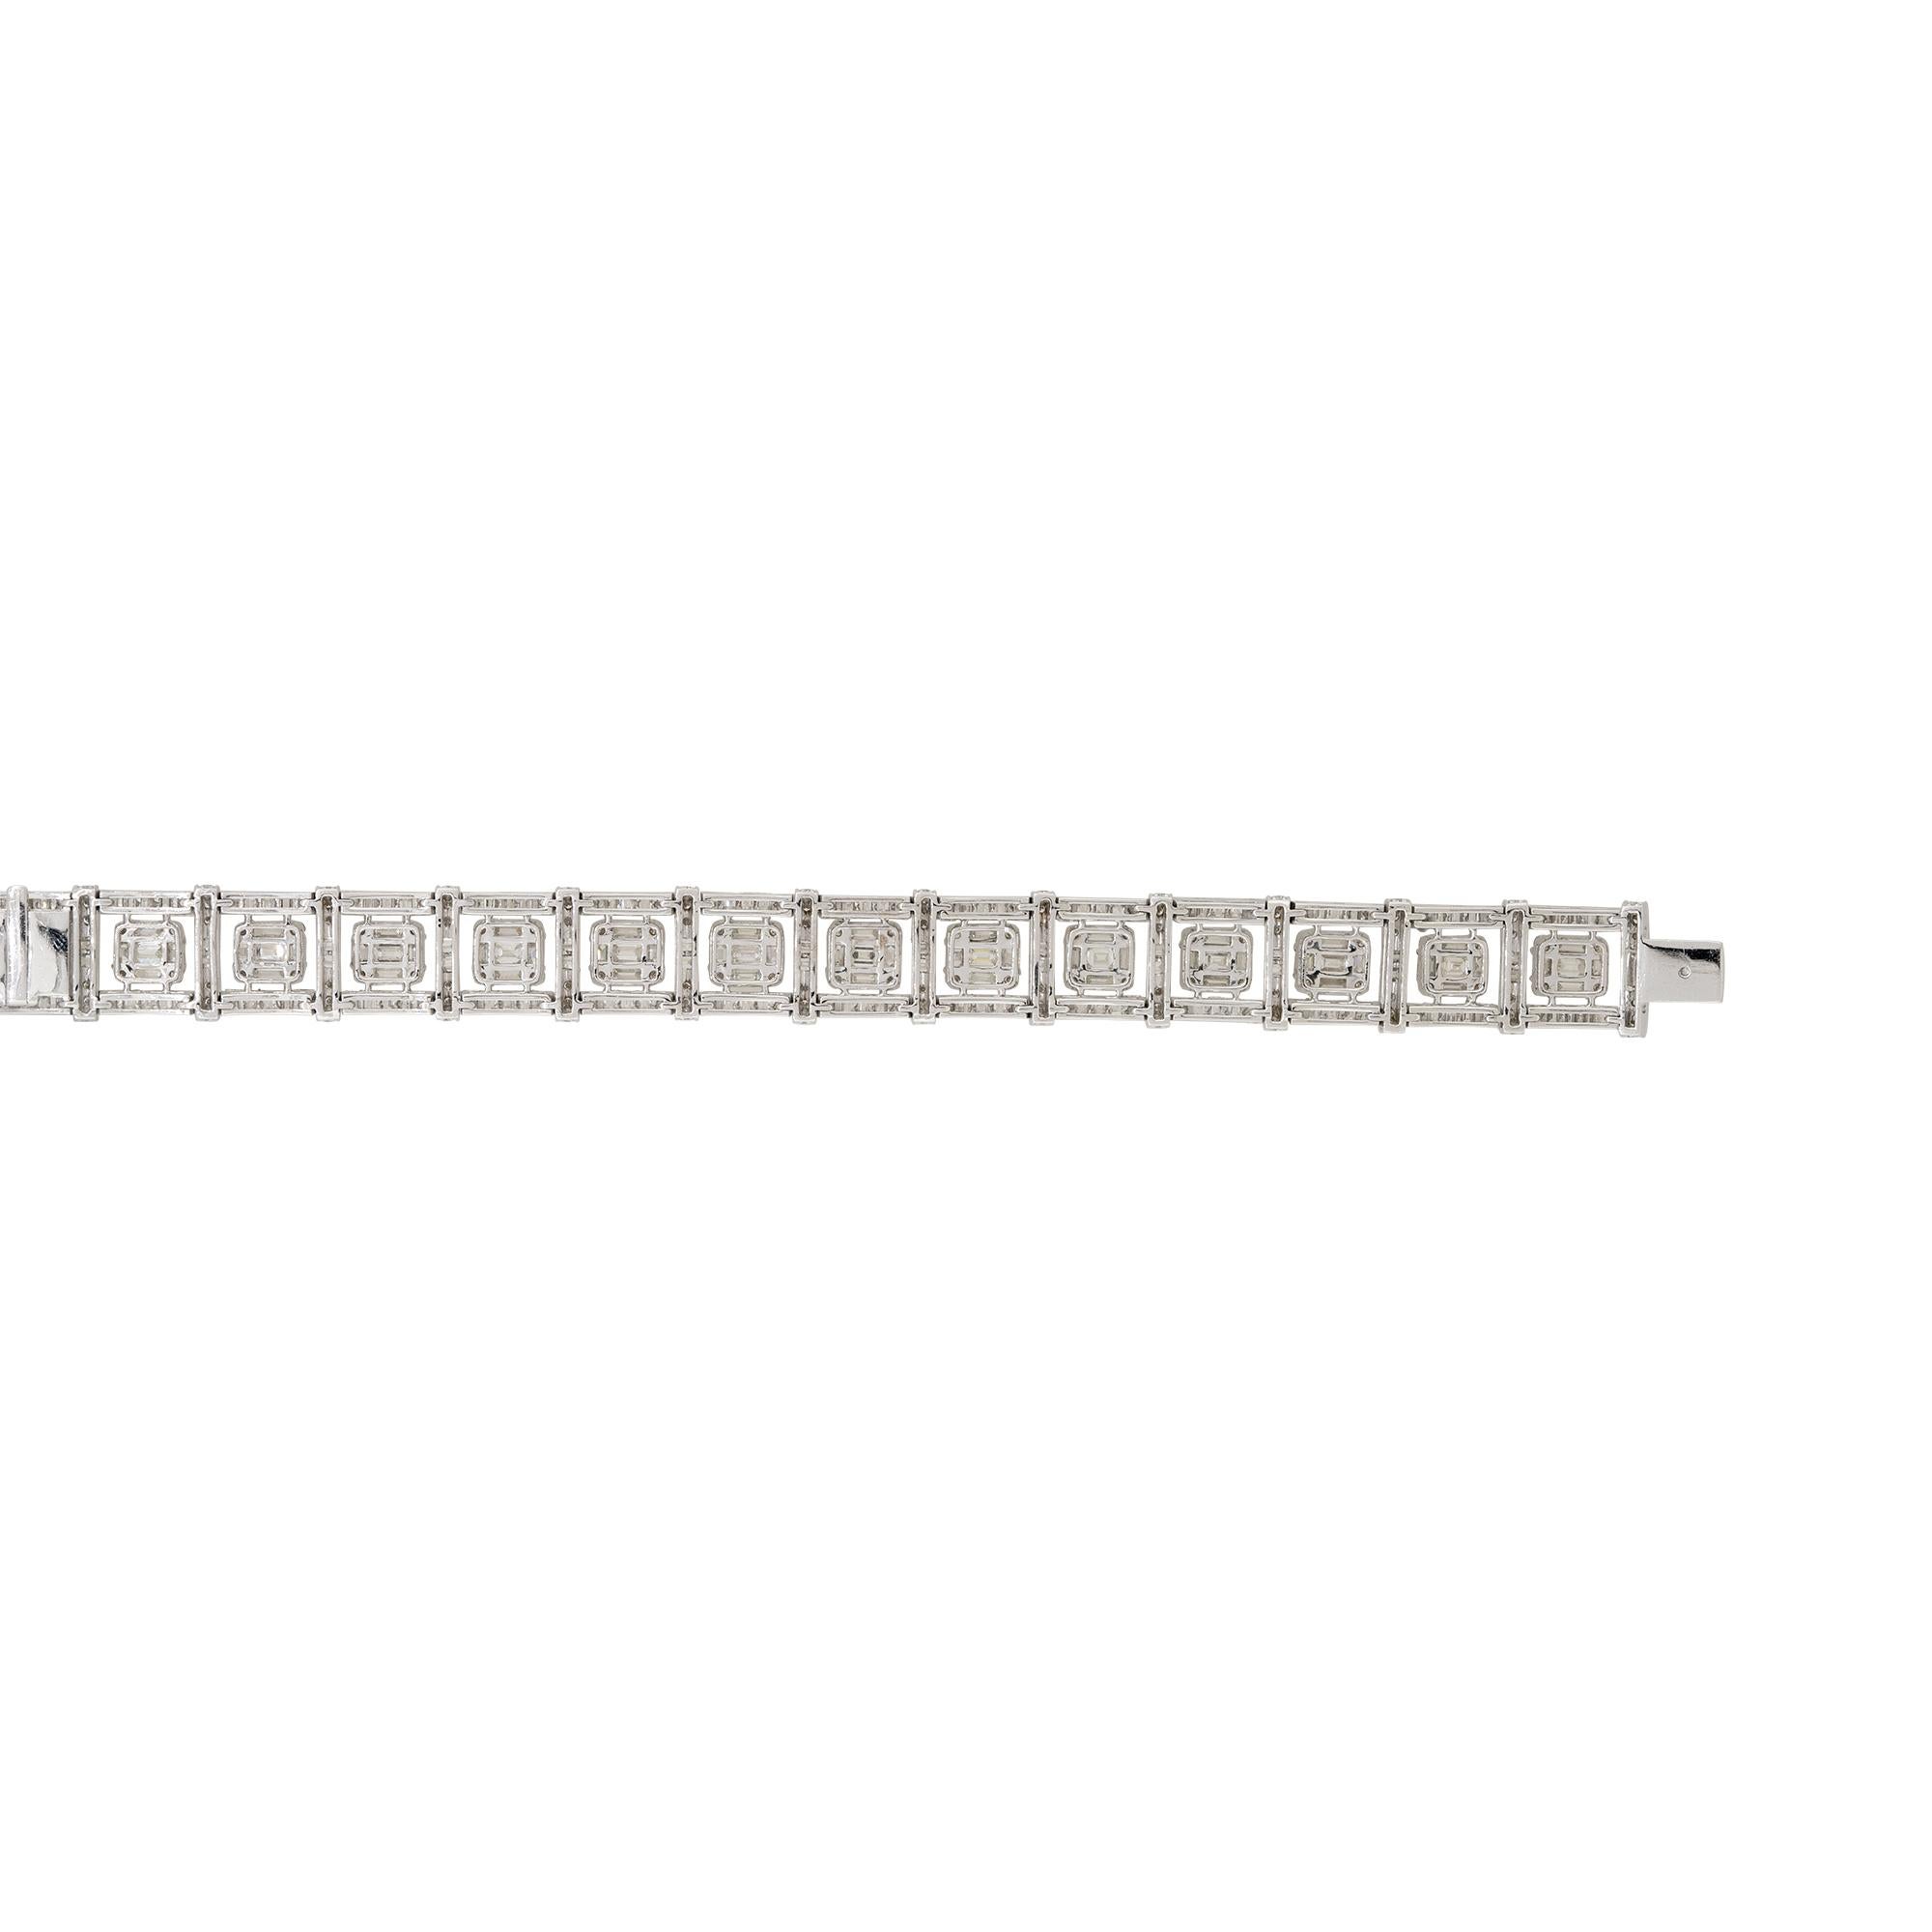 Produkt Stil: Quadratisches Mosaik Station Diamant-Armband
MATERIAL: 18 Karat Weißgold
Diamanten-Details: Etwa 16,27 Karat Diamanten im Baguetteschliff (238 Steine) und 3,4 Karat Diamanten im runden Brillantschliff (168 Steine), mit einem